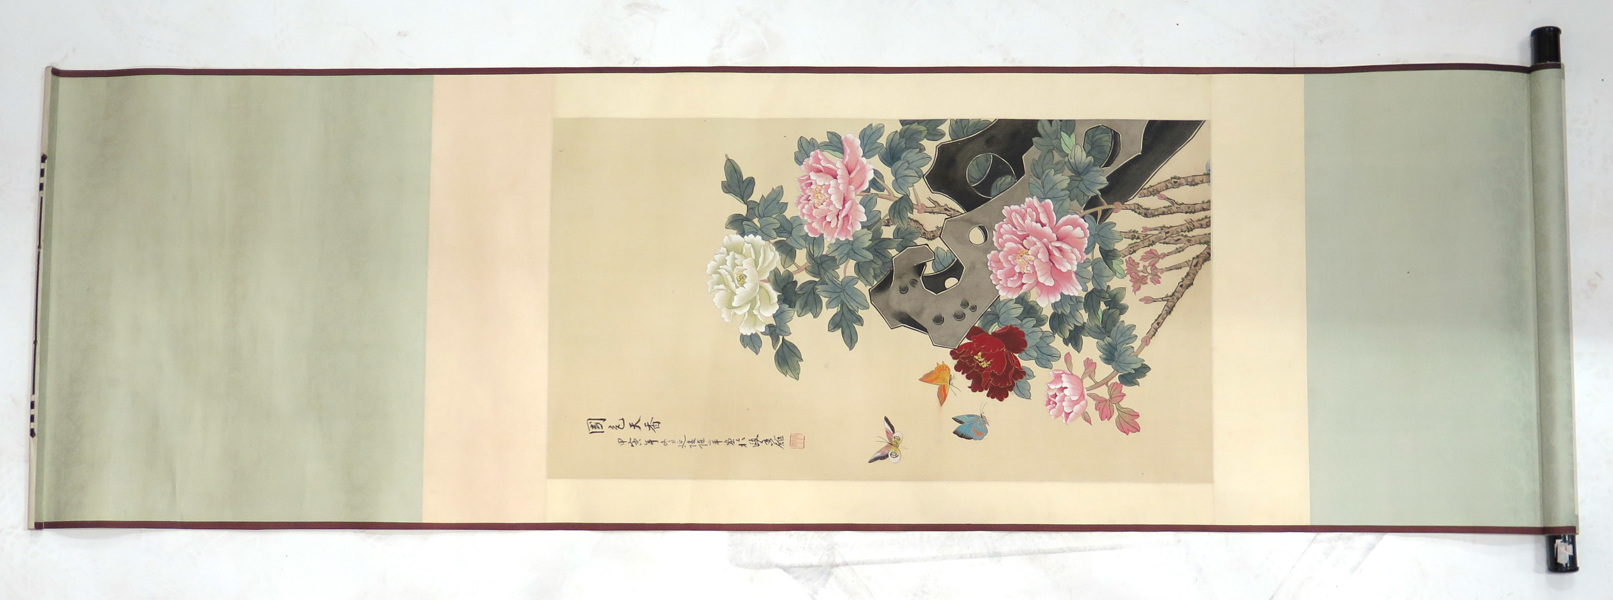 Bildrulle, gouache på papper, Kina, 1900-tal, _17937a_8da0dc7060656bf_lg.jpeg